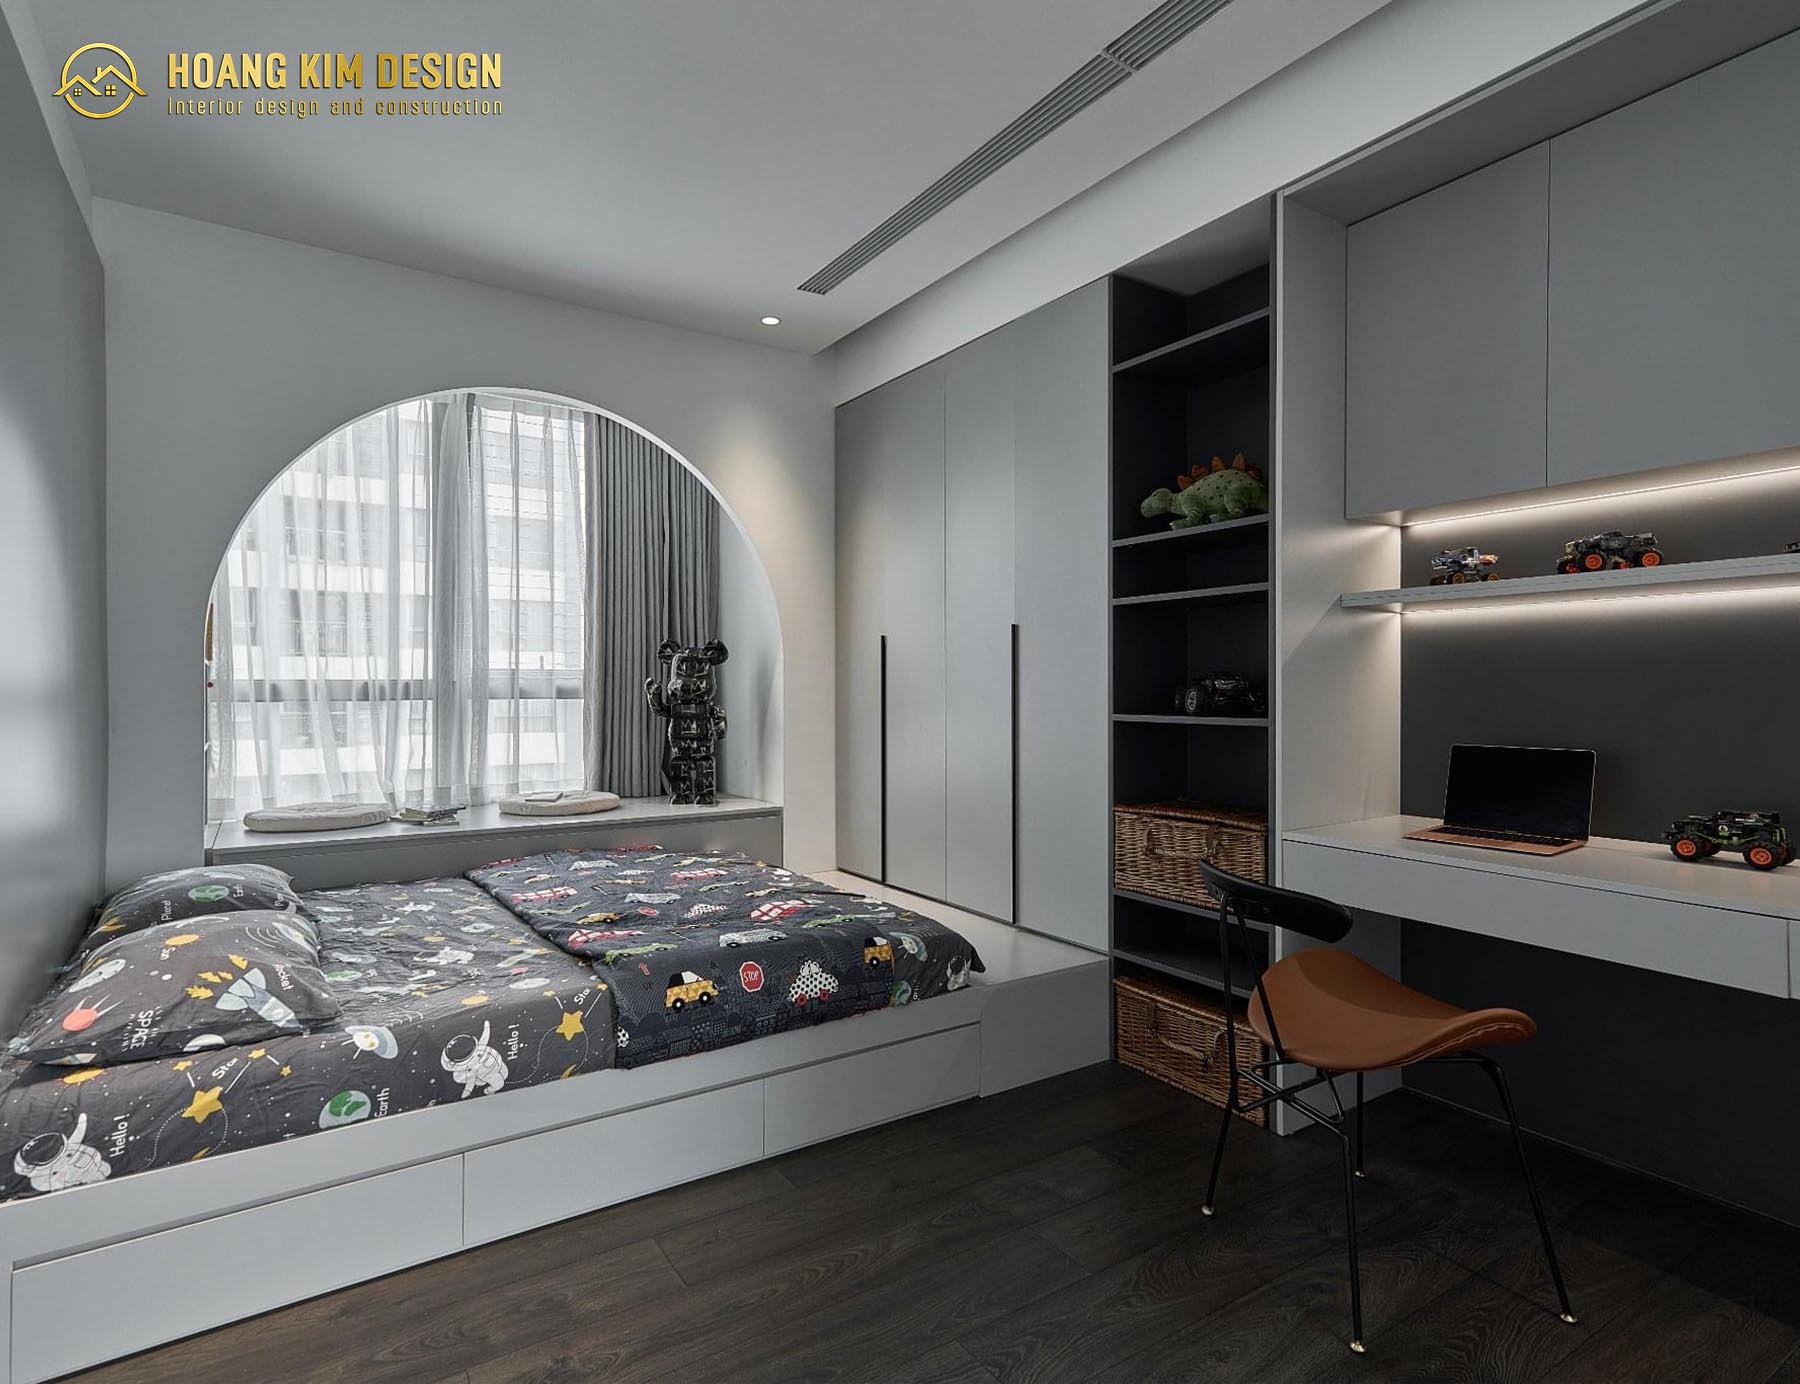 Tủ đồ được thiết kế tích hợp bên dưới giường giúp cho không gian được trở nên rộng rãi hơn